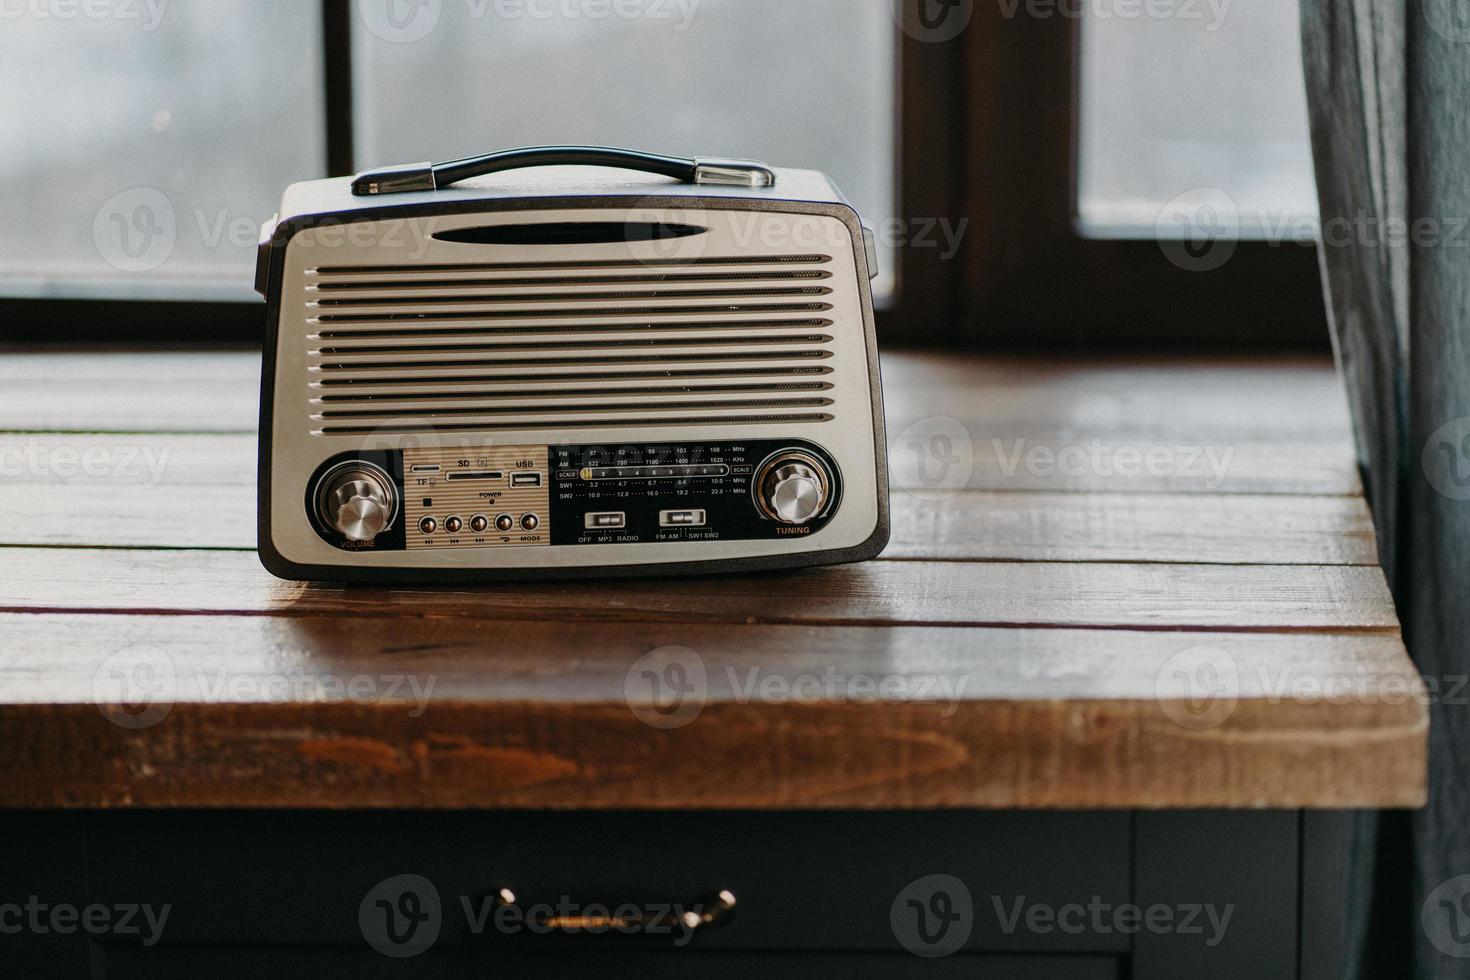 radio vintage rétro sur la surface de la table en bois près de la fenêtre. retour aux années 80. nostalgie musicale et concept de technologie ancienne. flûte à bec antique photo